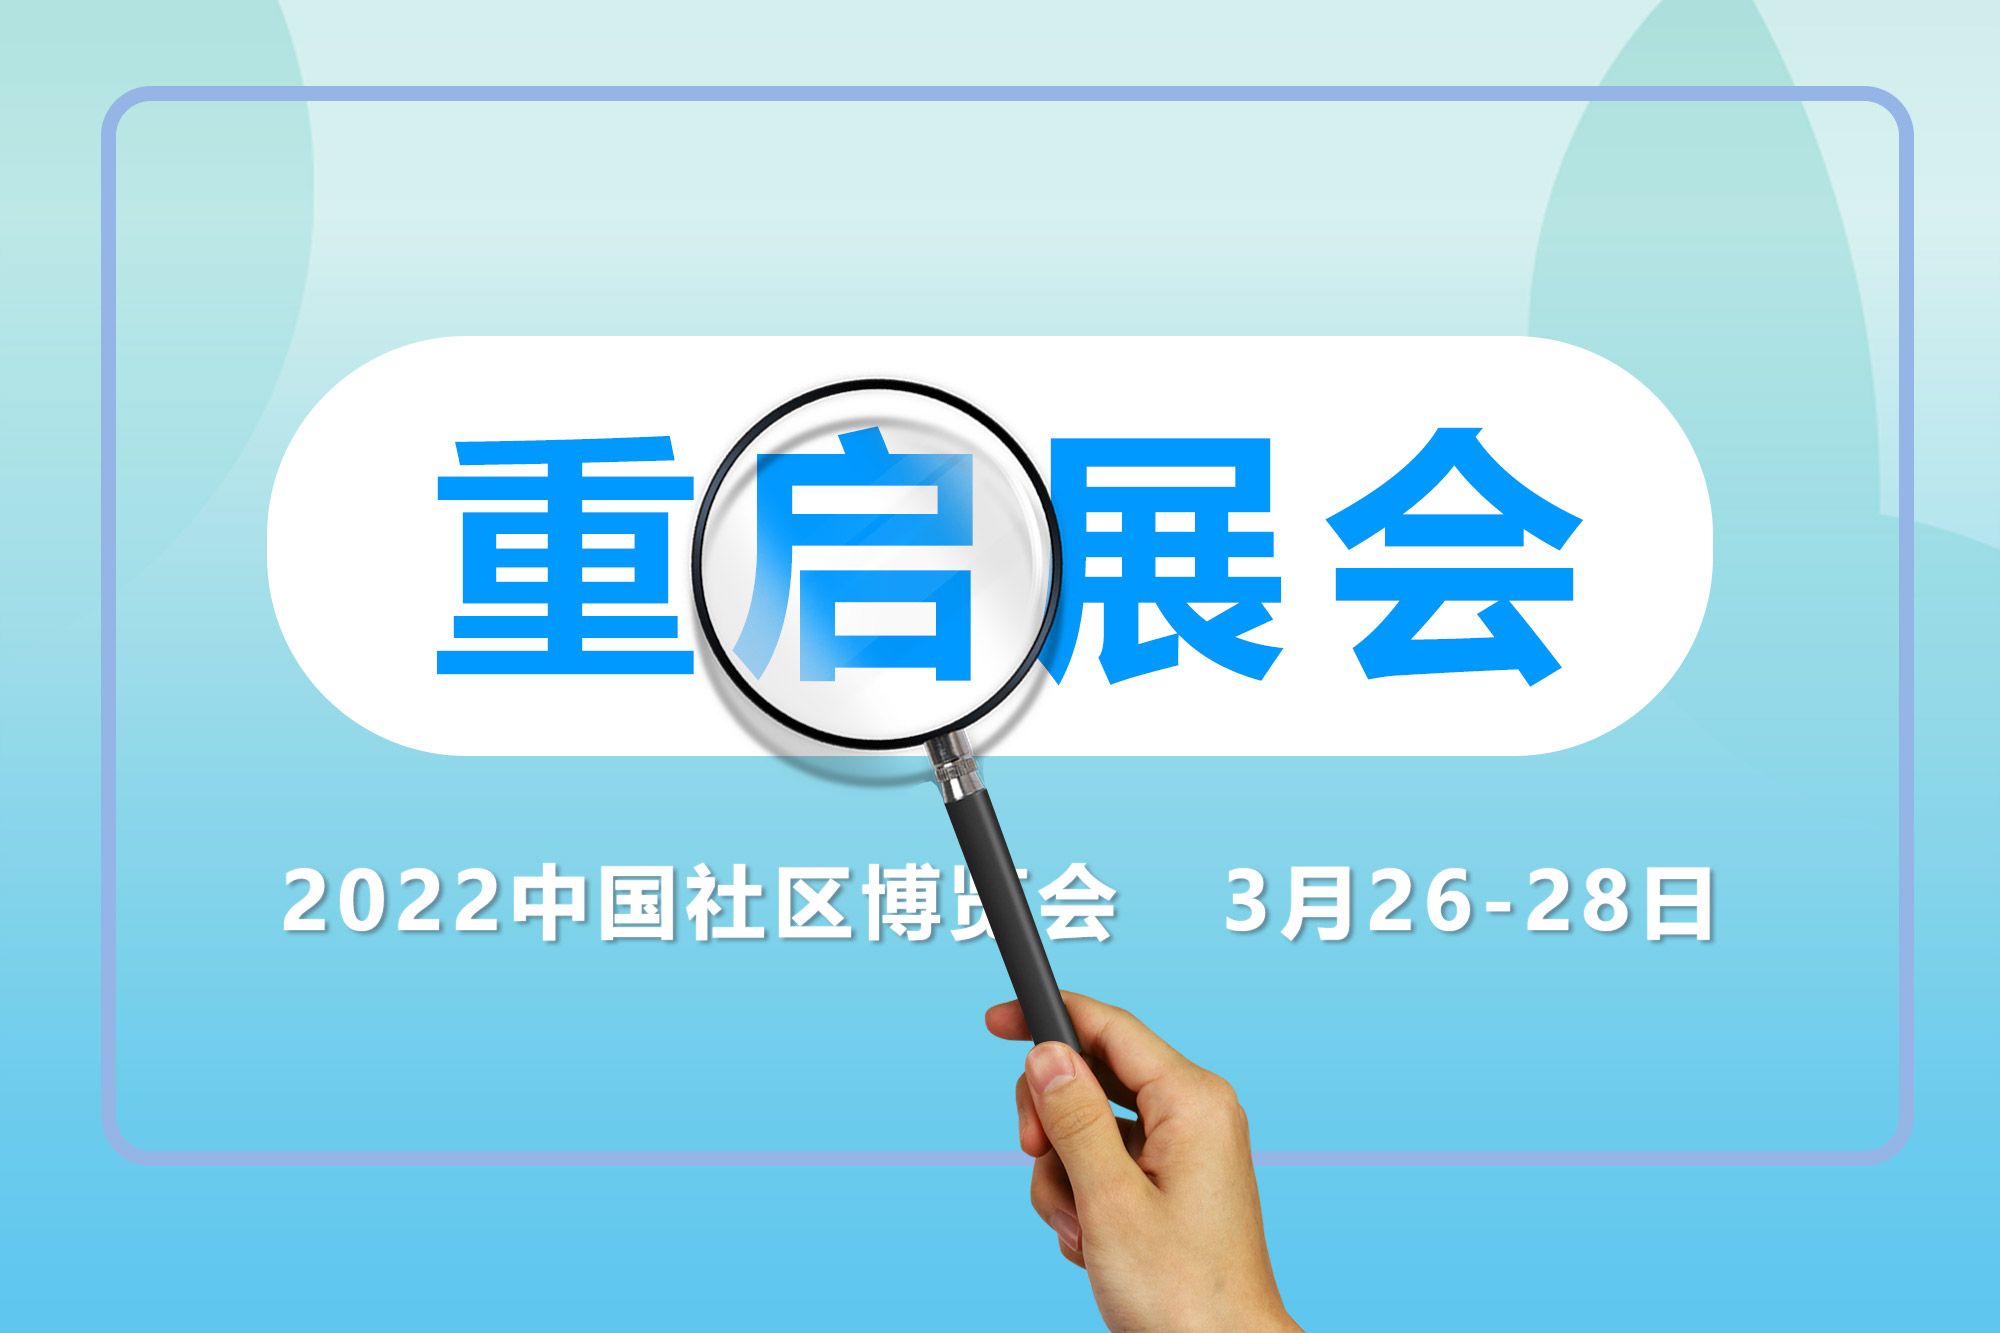 复展通知！第二届中国智慧社区博览会定于2022年3月26日-28日举办！